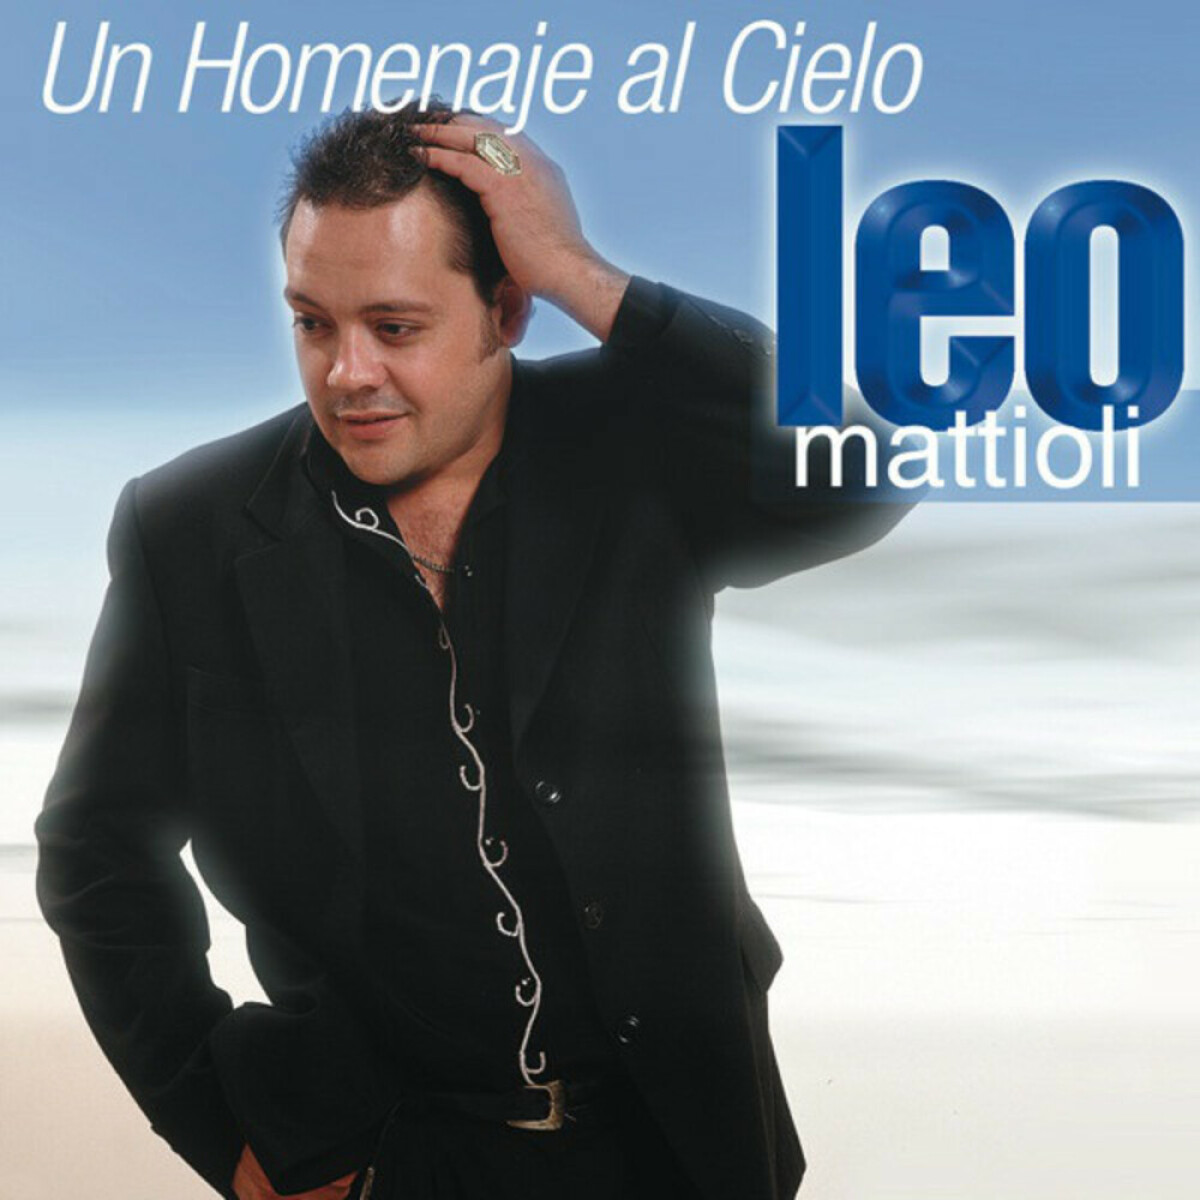 Mattioli Leo - Un Homenaje Al Cielo - Vinilo 